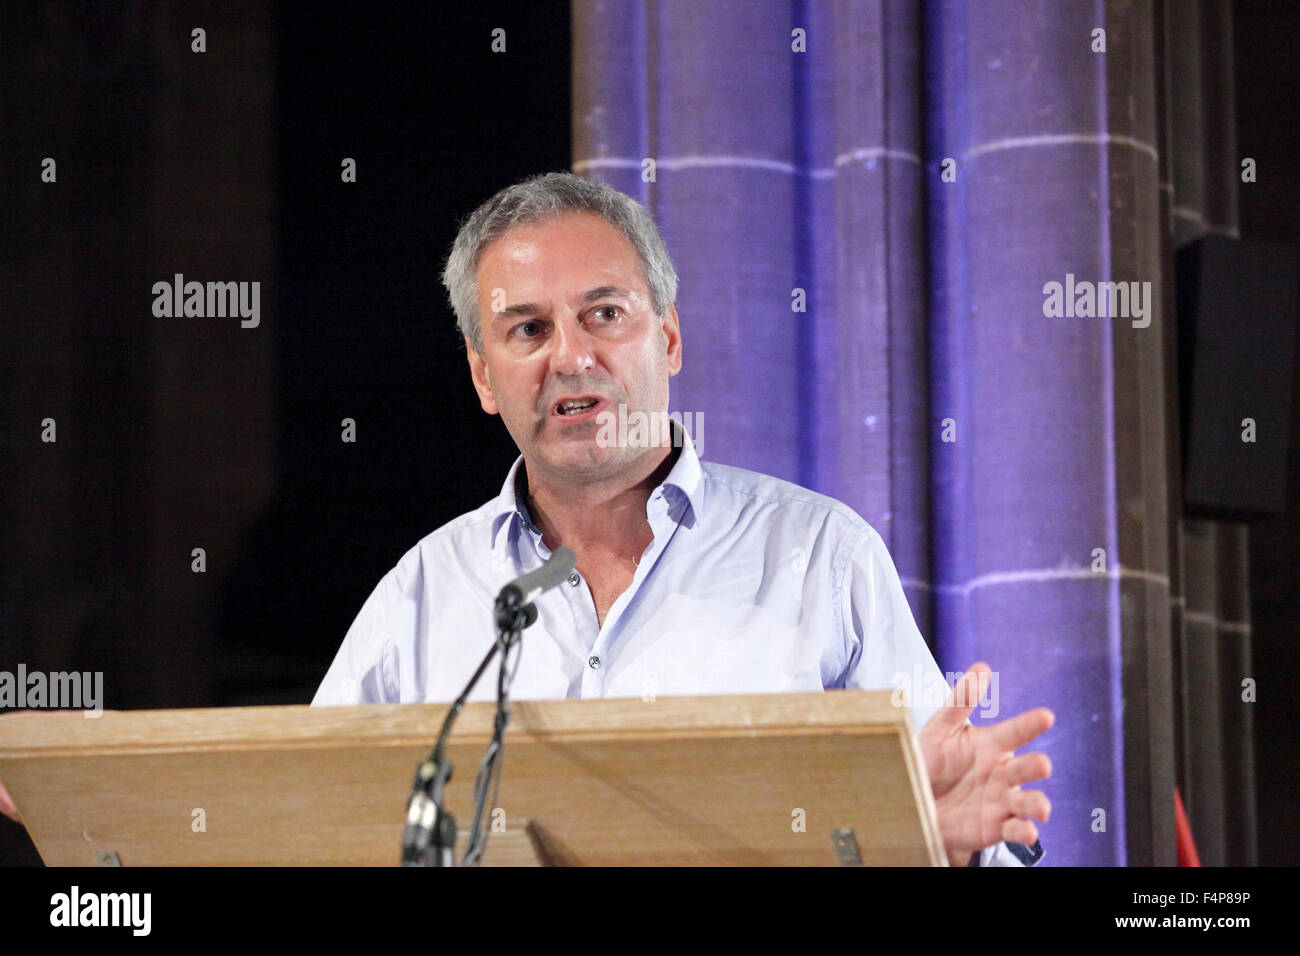 Kevin Kev Maguire en el podio, hablando en el Post del pueblo, Manchester, CWU evento Foto de stock